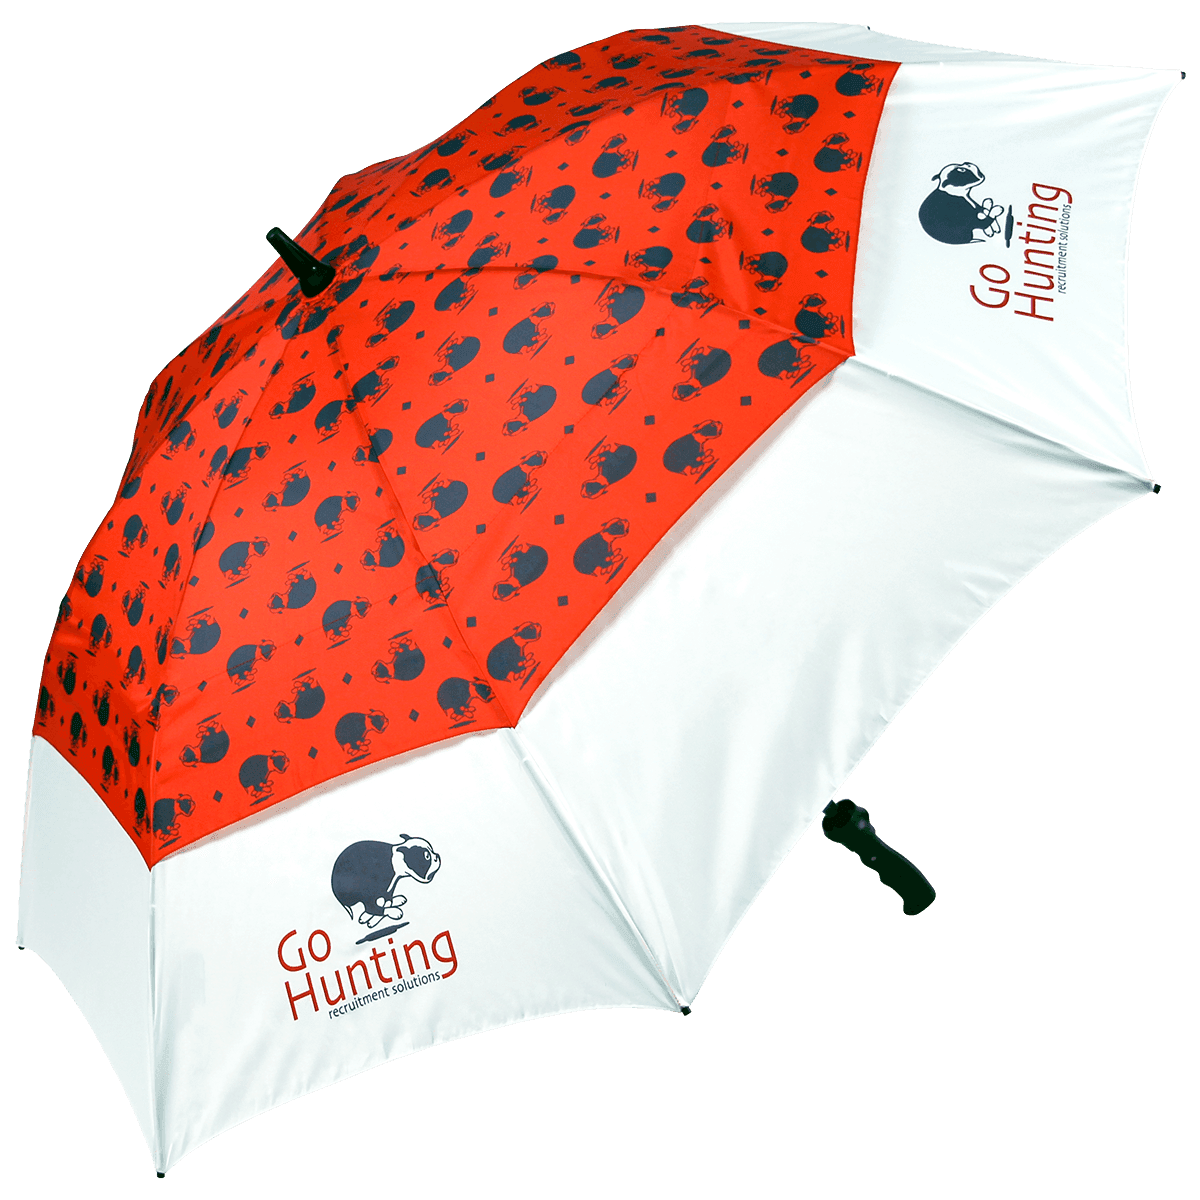 ProBrella Fiberglass Vented Soft Feel Umbrella